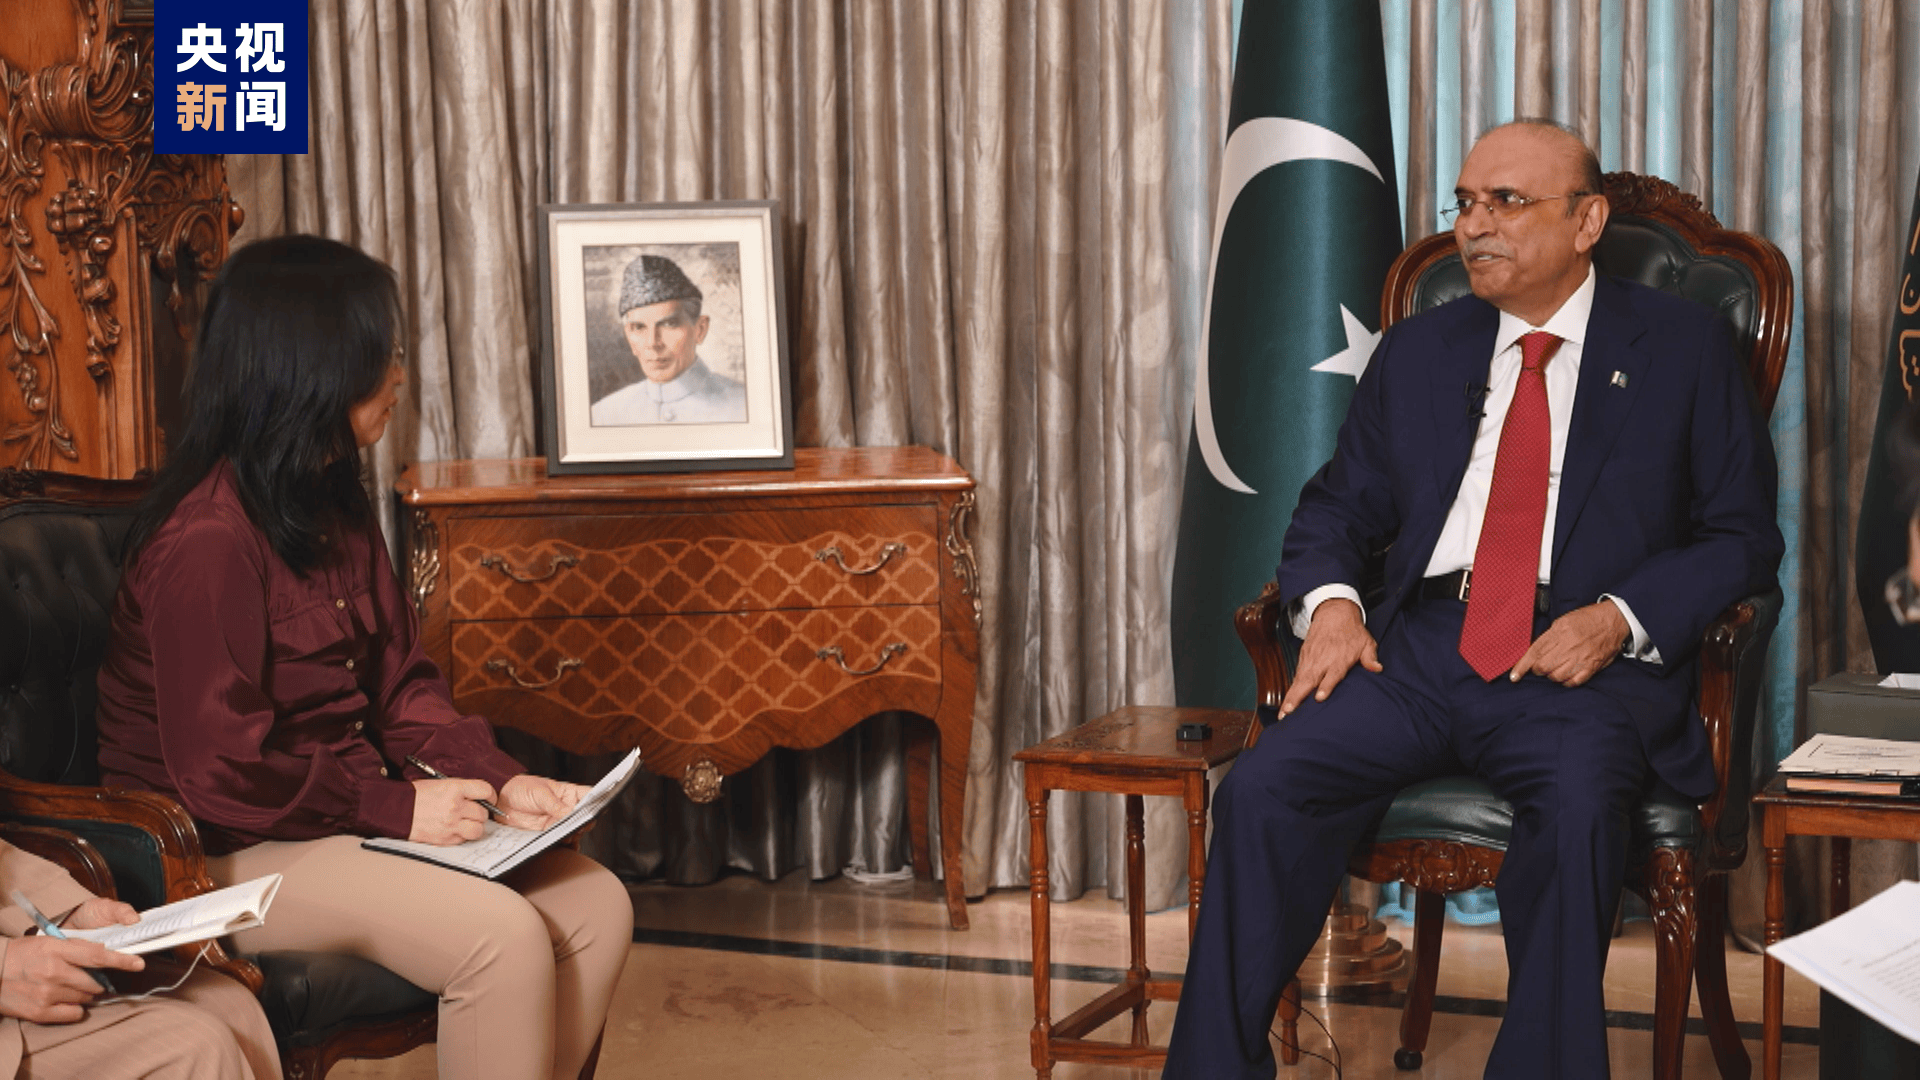 历久弥新 巴中关系始终坚如磐石 总台专访丨巴基斯坦总统